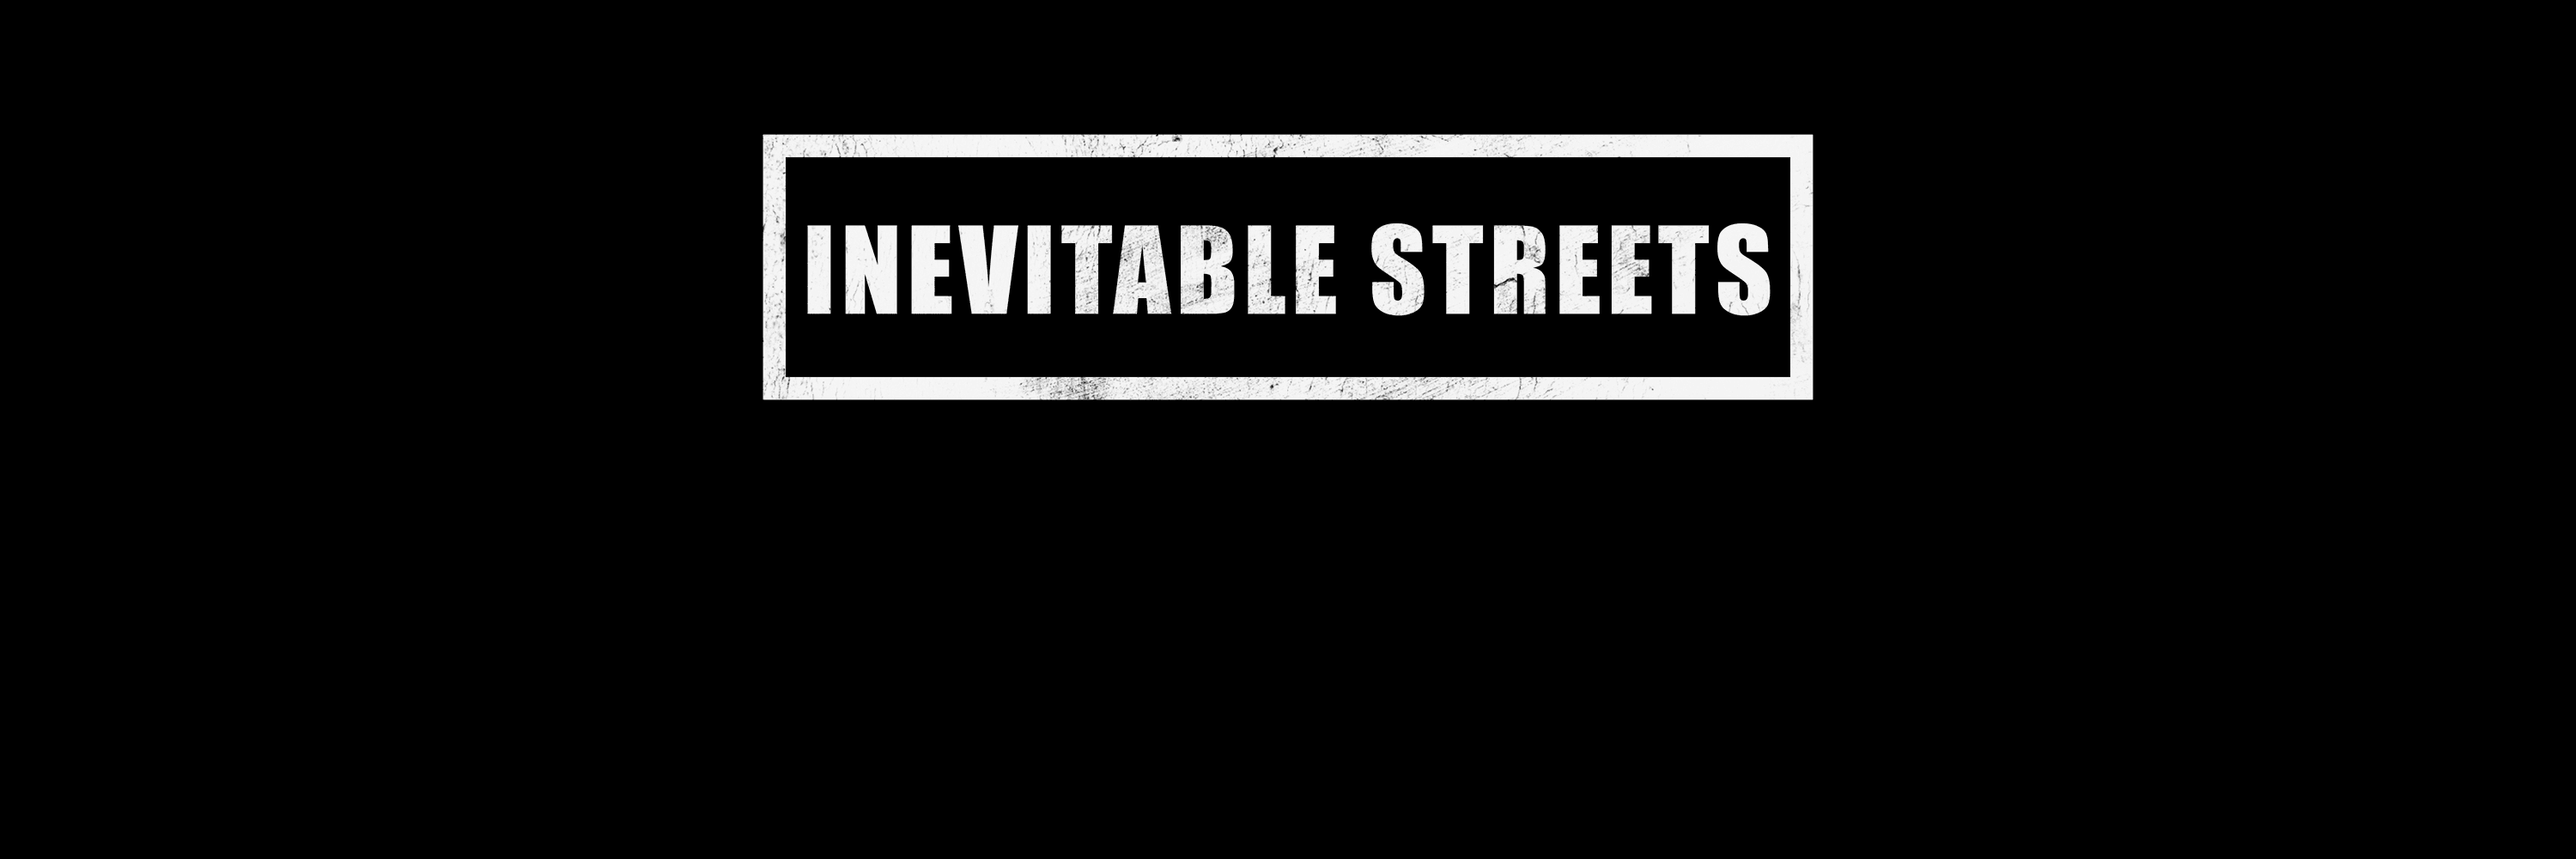 Inevitable Streets